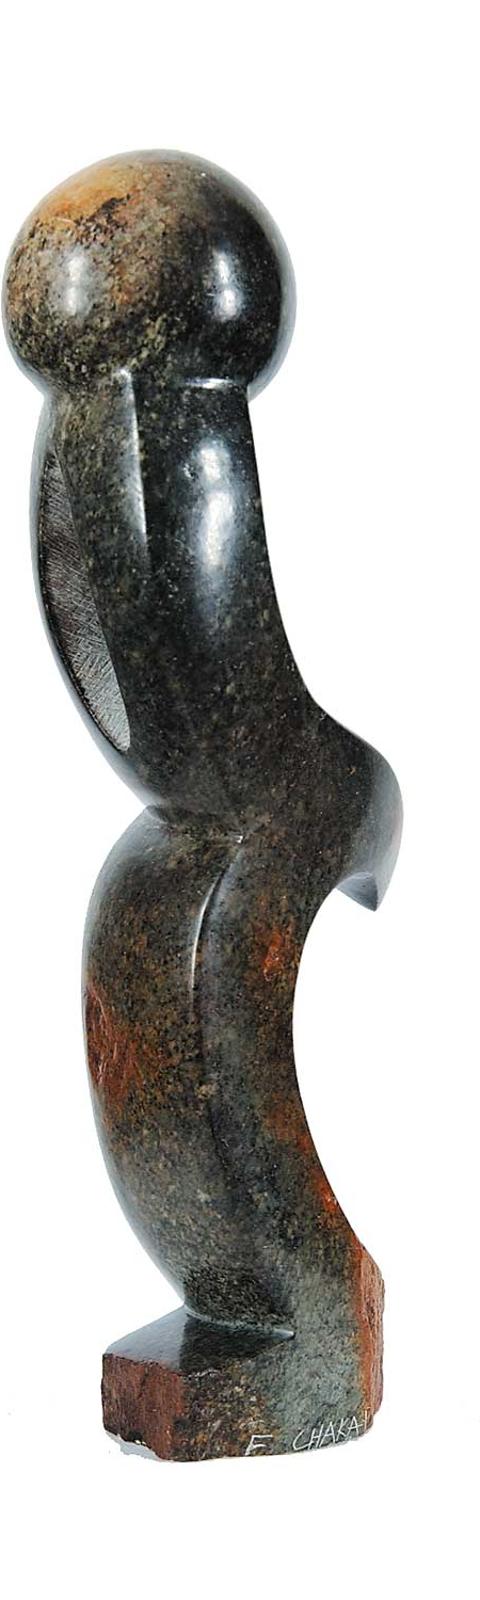 Fungai Chakapu - Untitled - Abstract Form